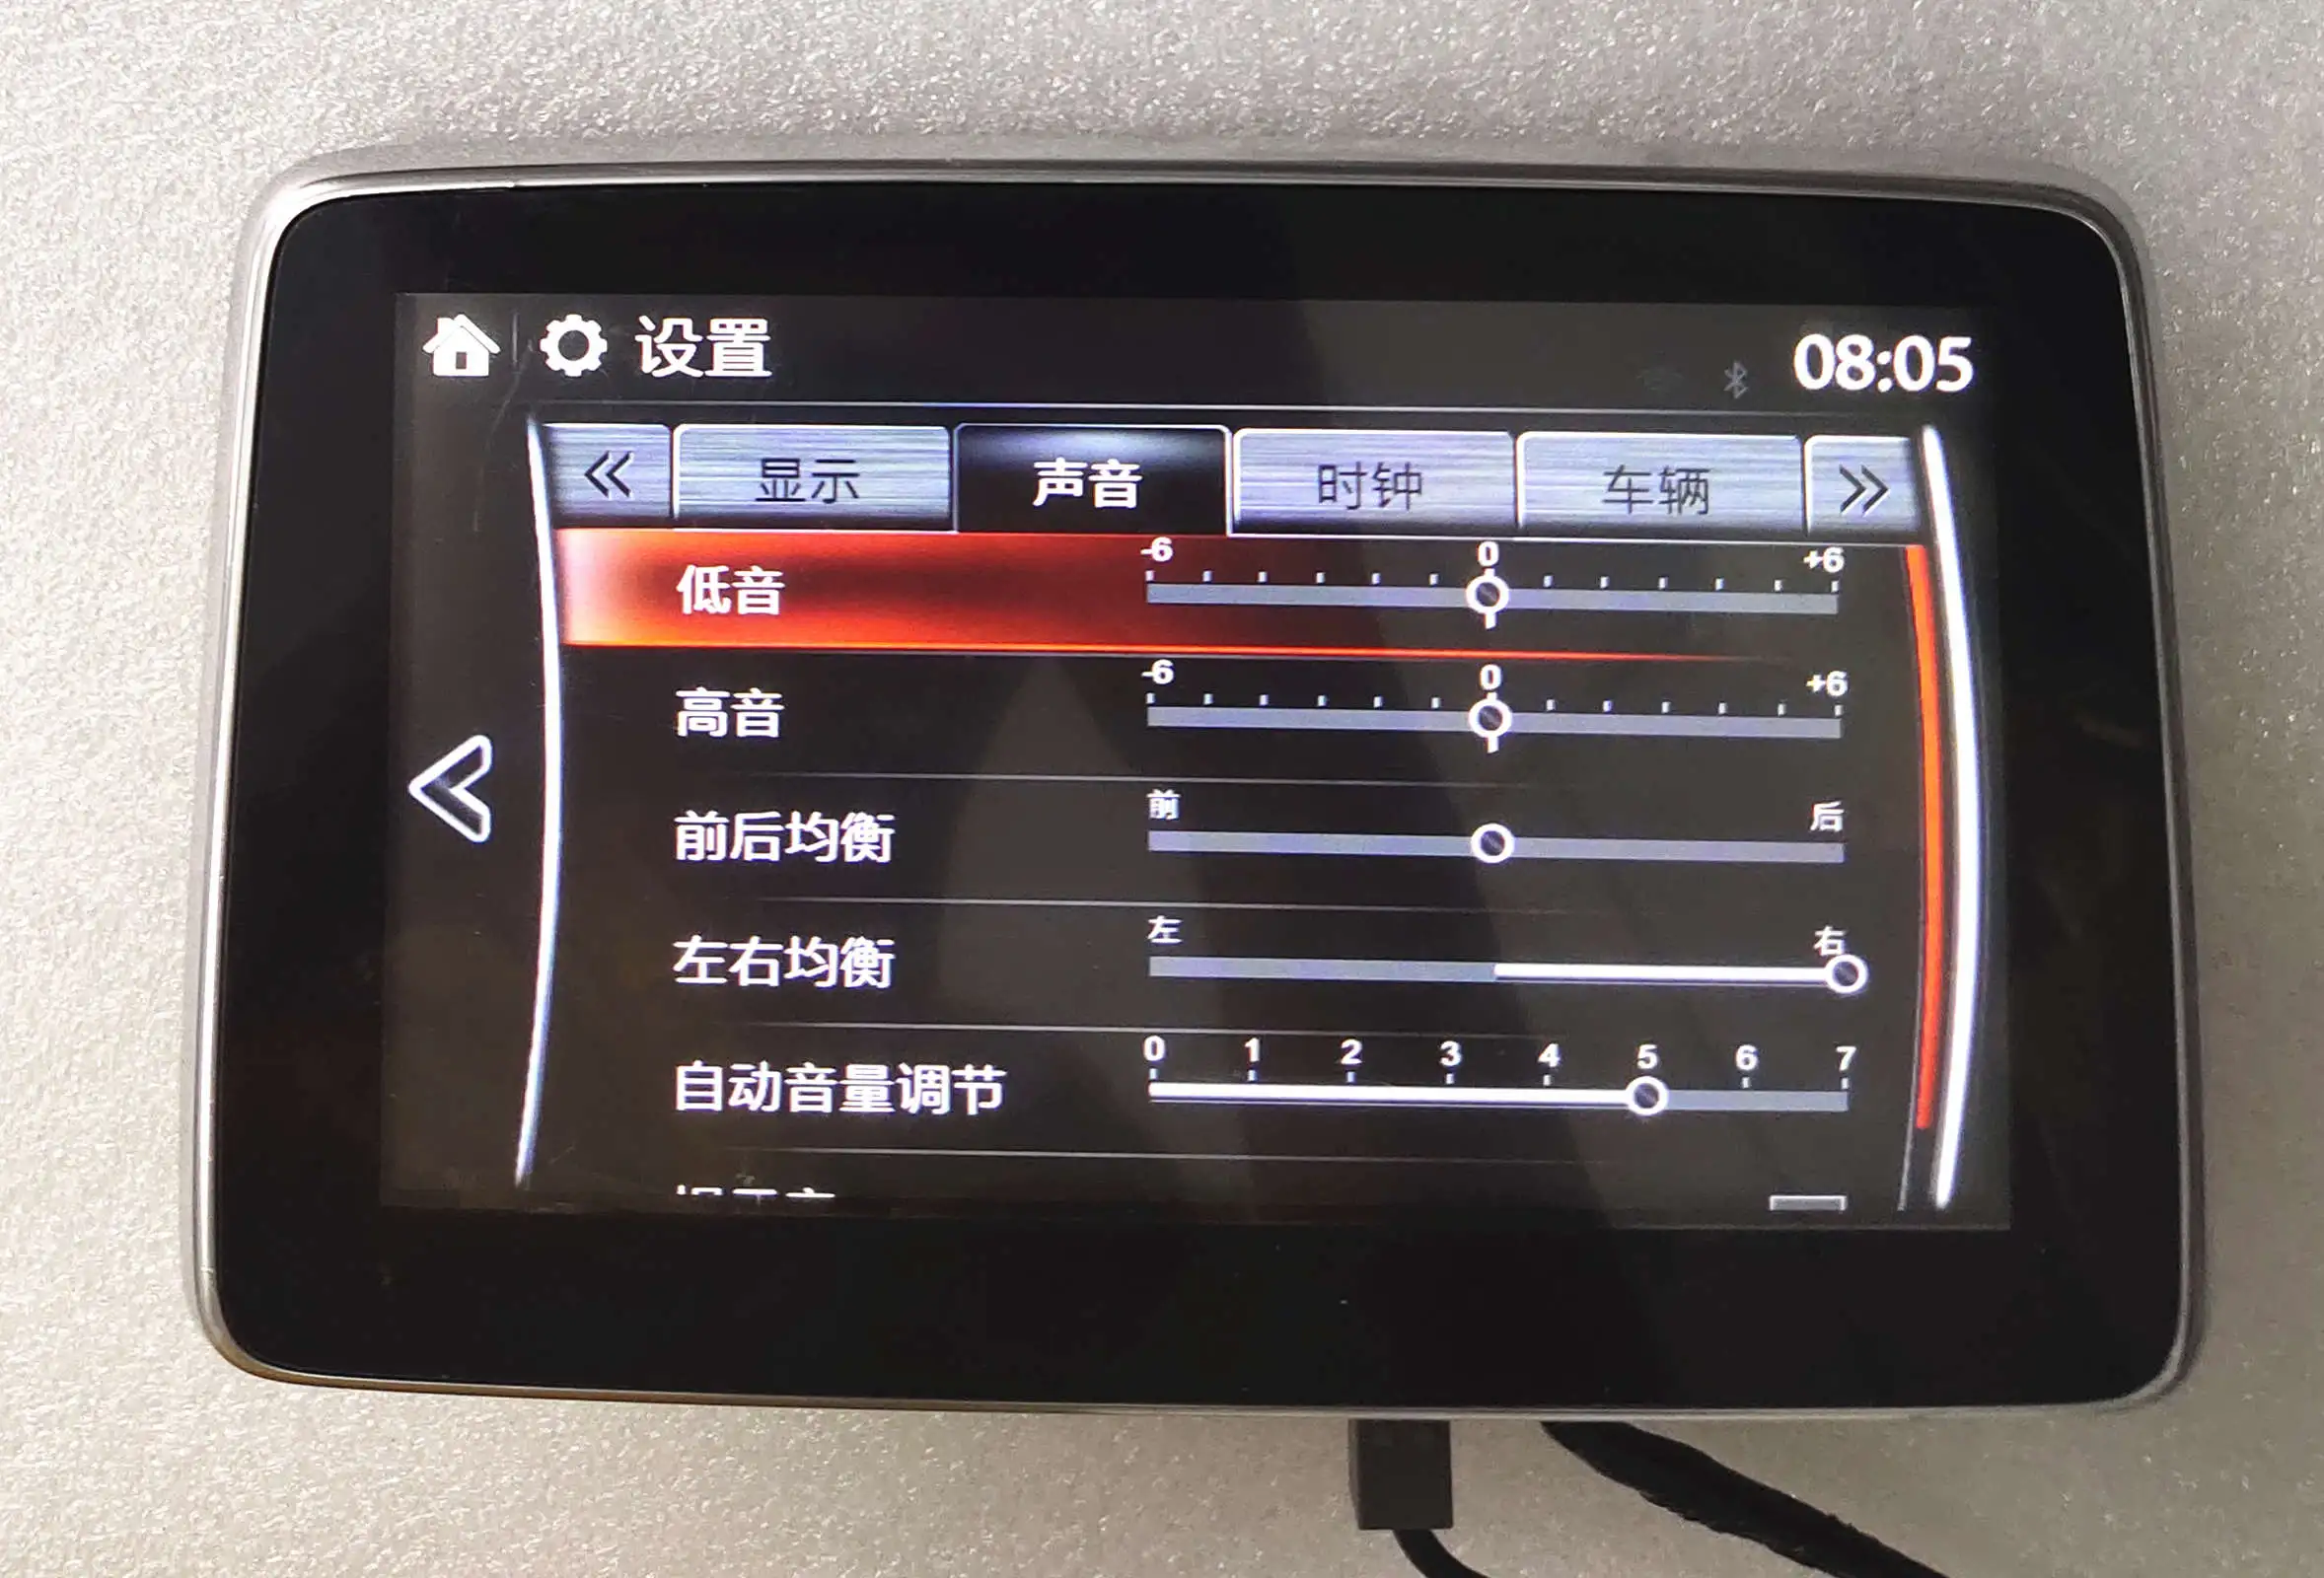 7-дюймовый Универсальный емкостный сенсорный экран Экран планшета Сенсор для радио Mazda3 Axela 36Pin особый колорит Экран HCY-CTP7088-A0 FPC